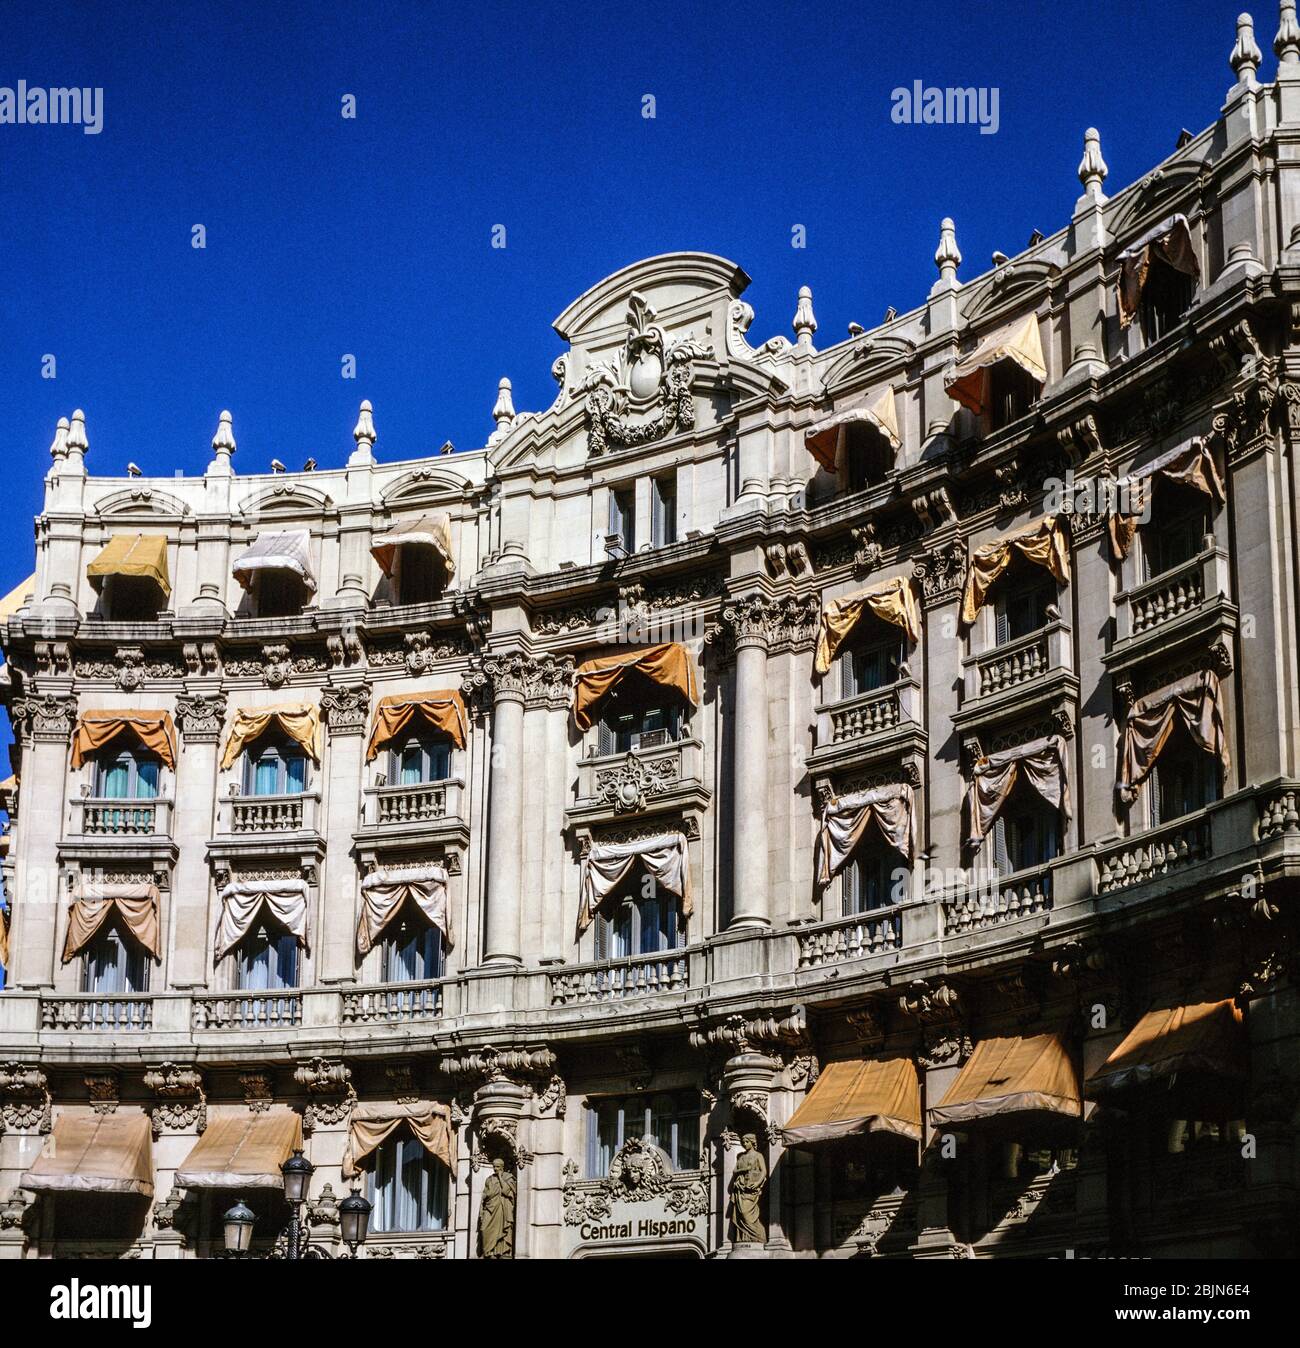 Banco santander central hispano fotografías e imágenes de alta resolución -  Alamy